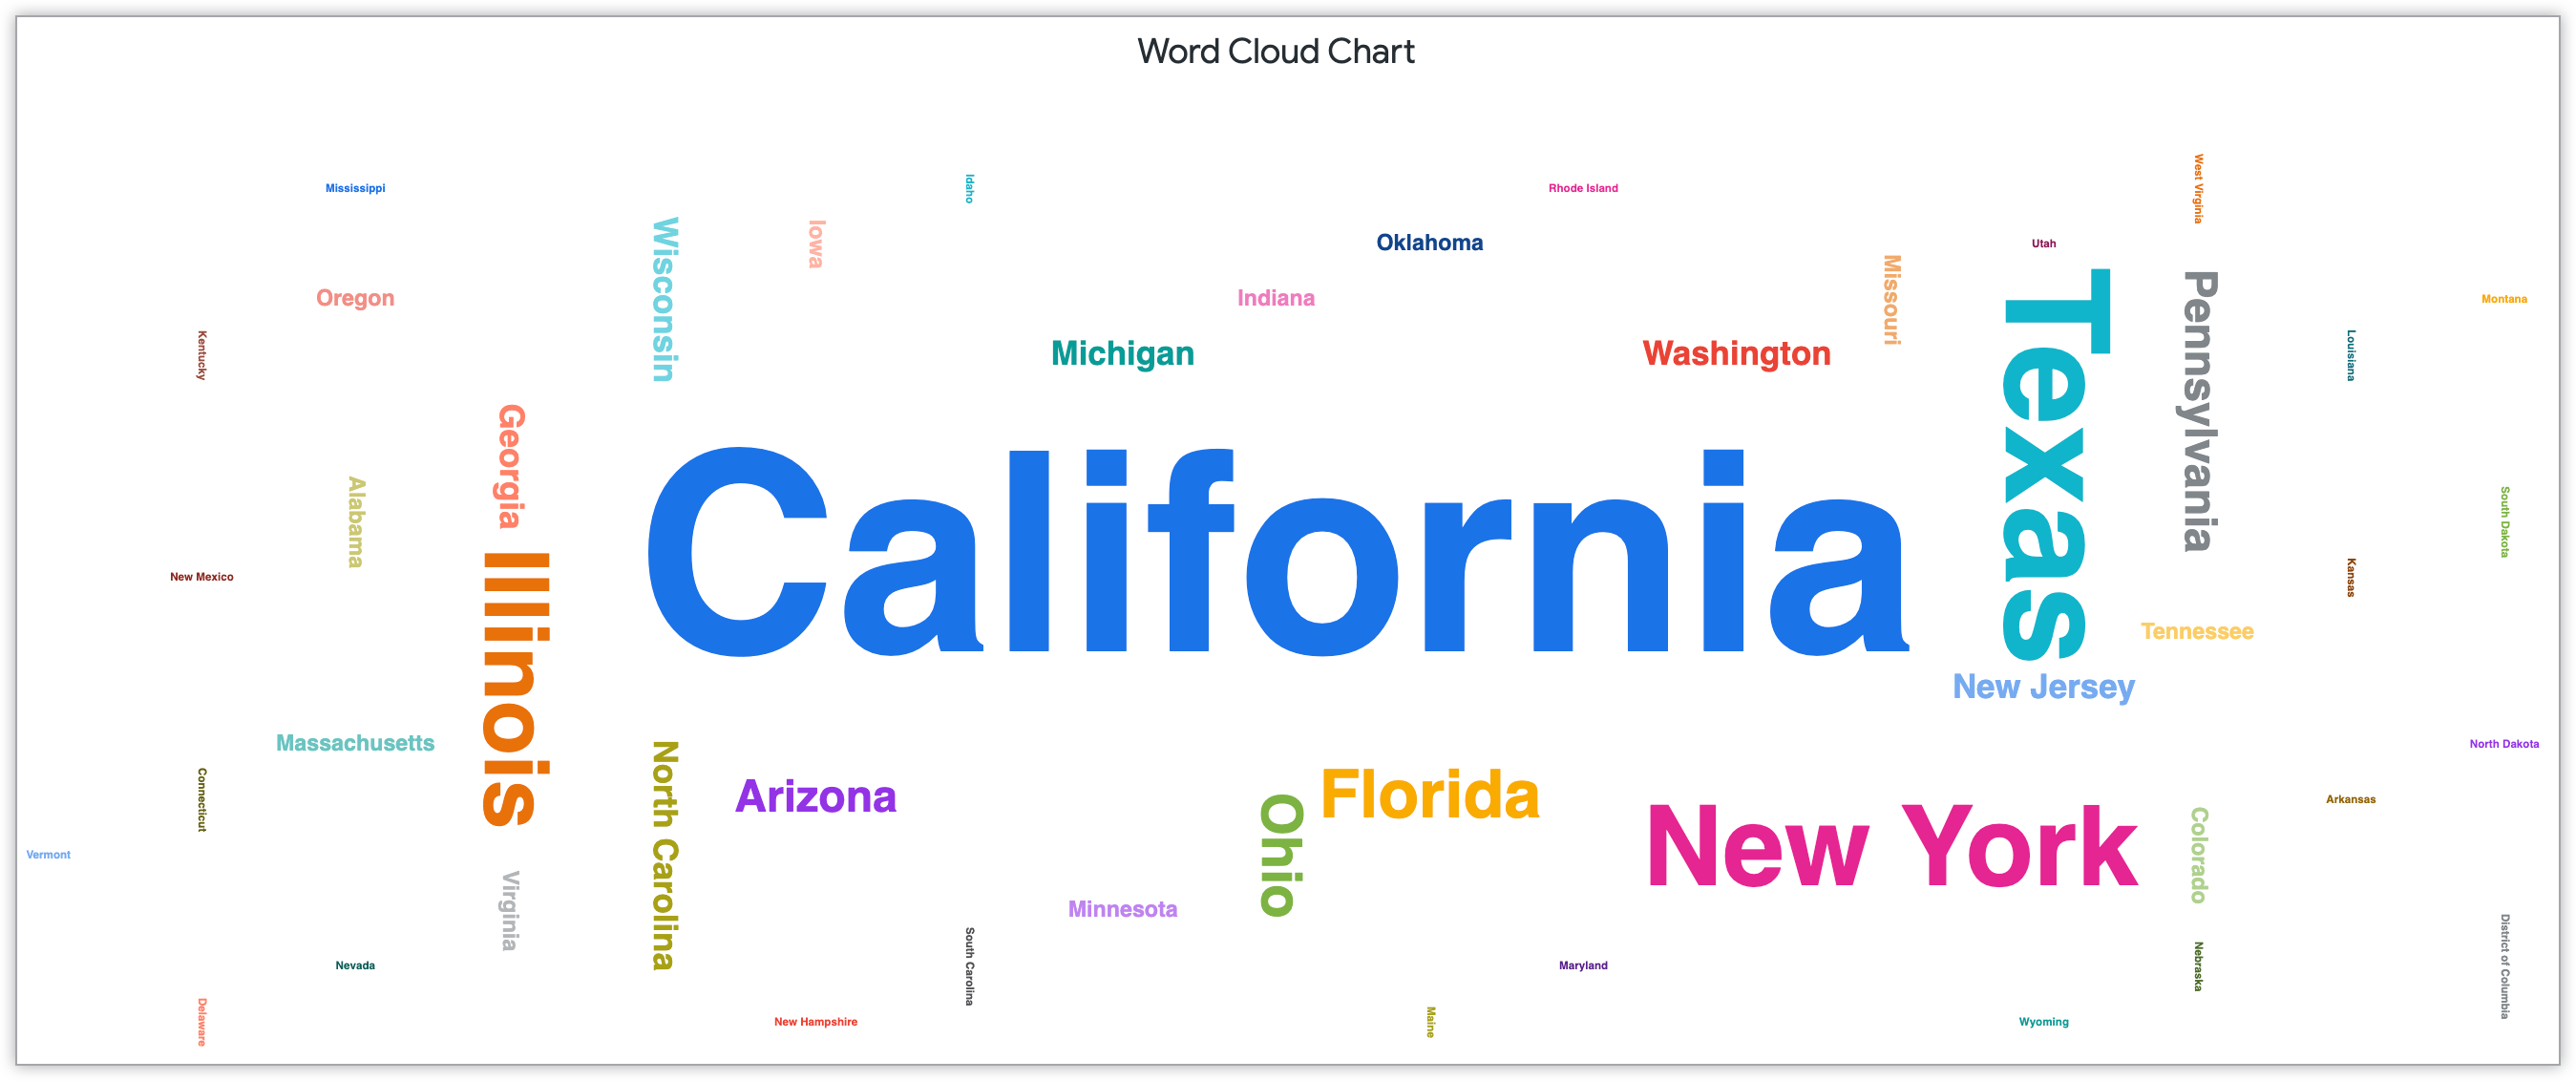 Gráfico de nuvem de palavras mostrando nomes de estados dimensionados pelo número de clientes naquele estado.